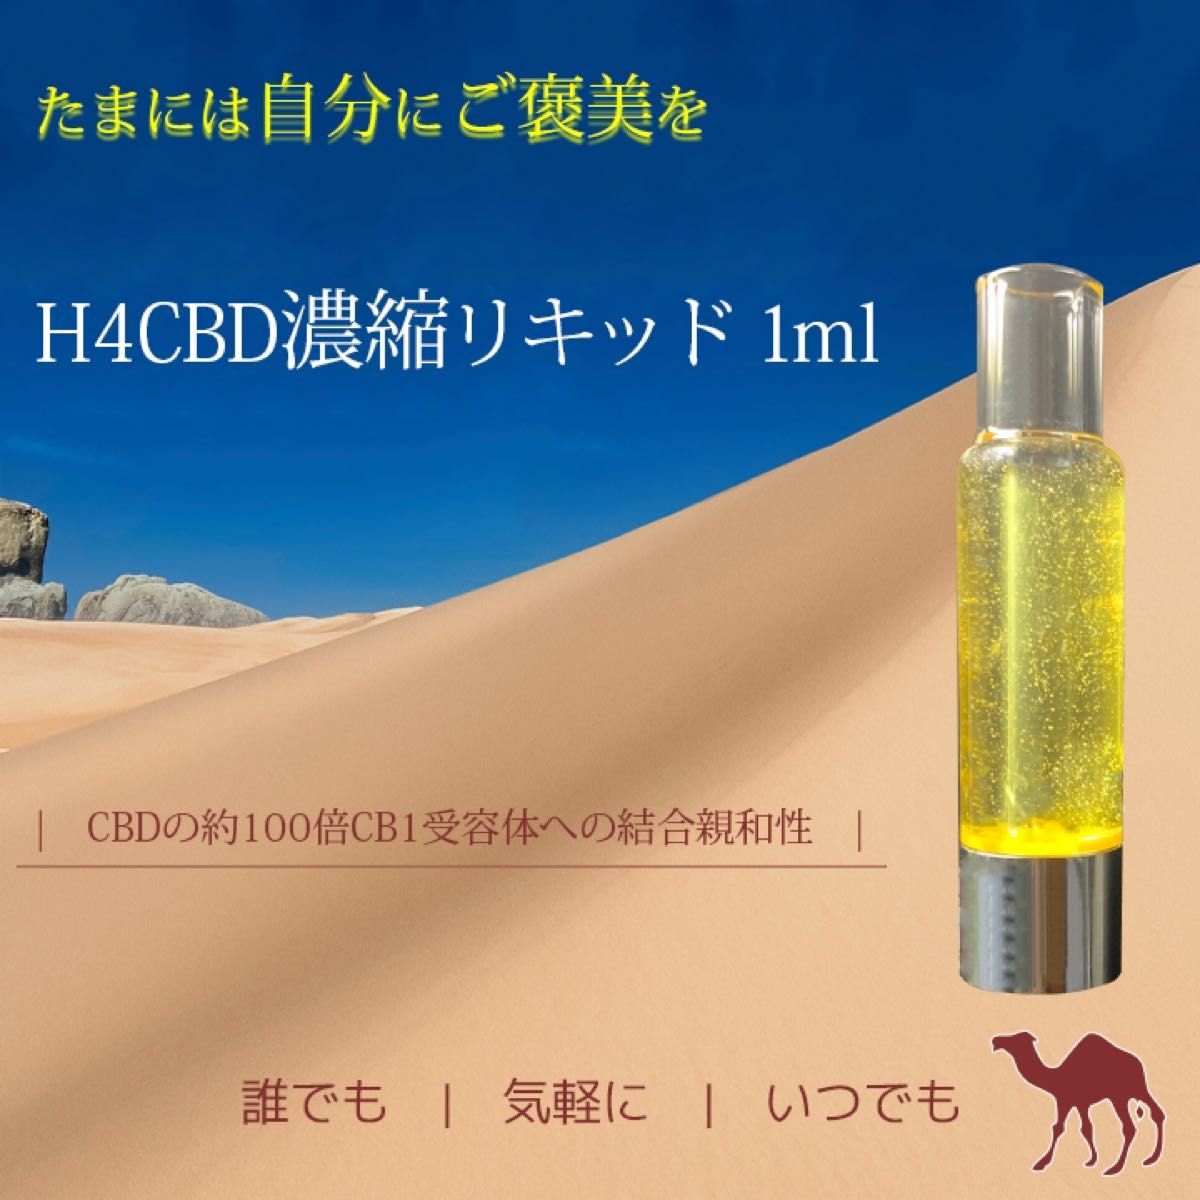 H4CBD原料 10g CoA有り【原料小売り】VAPEリキッド/ H4CBDリキッド 